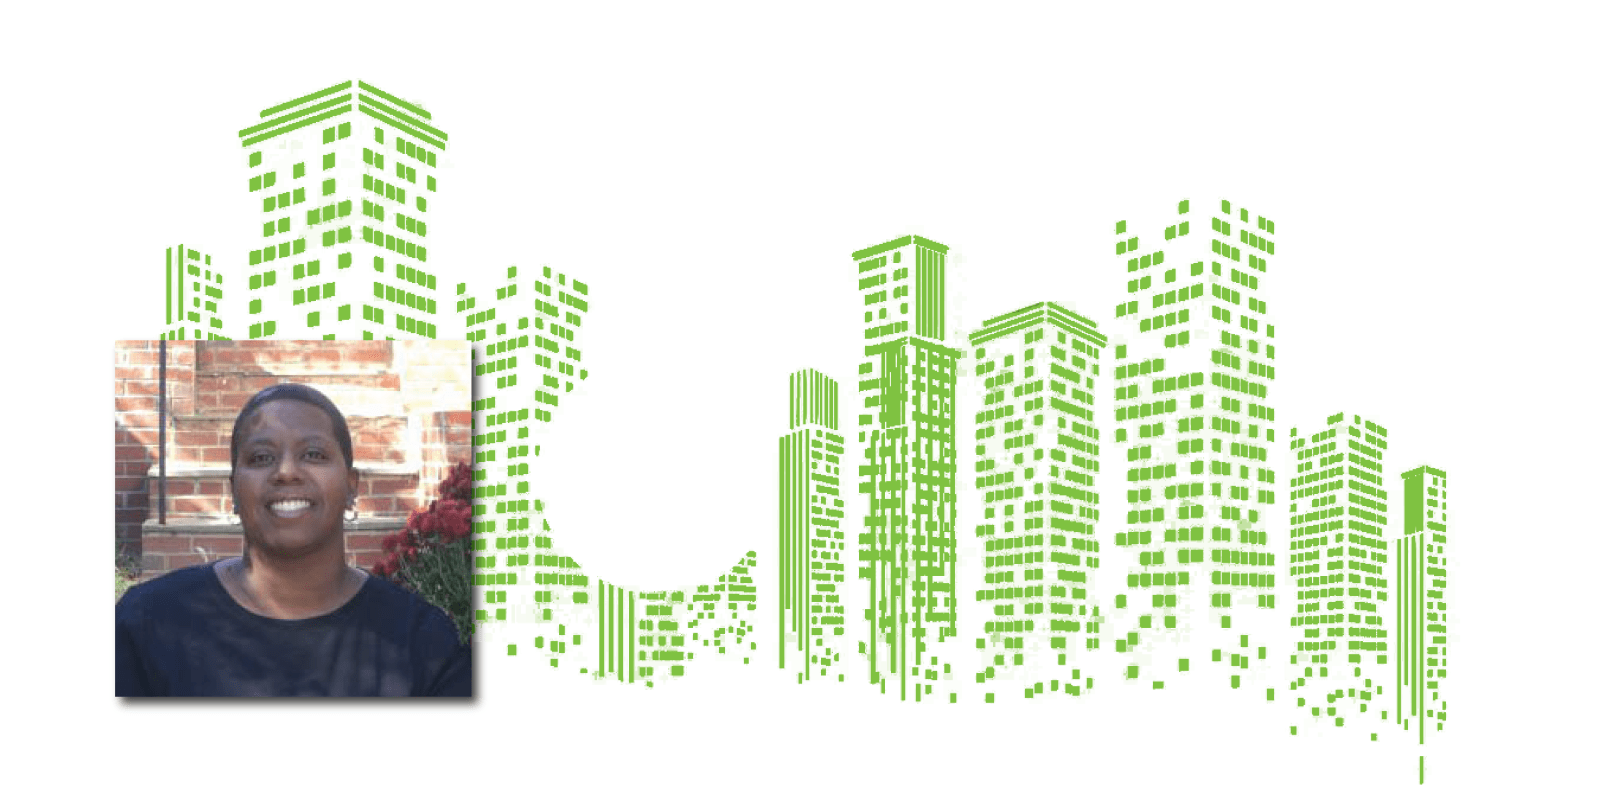 Abstract Green Buildings and L. Dara Baldwin headshot